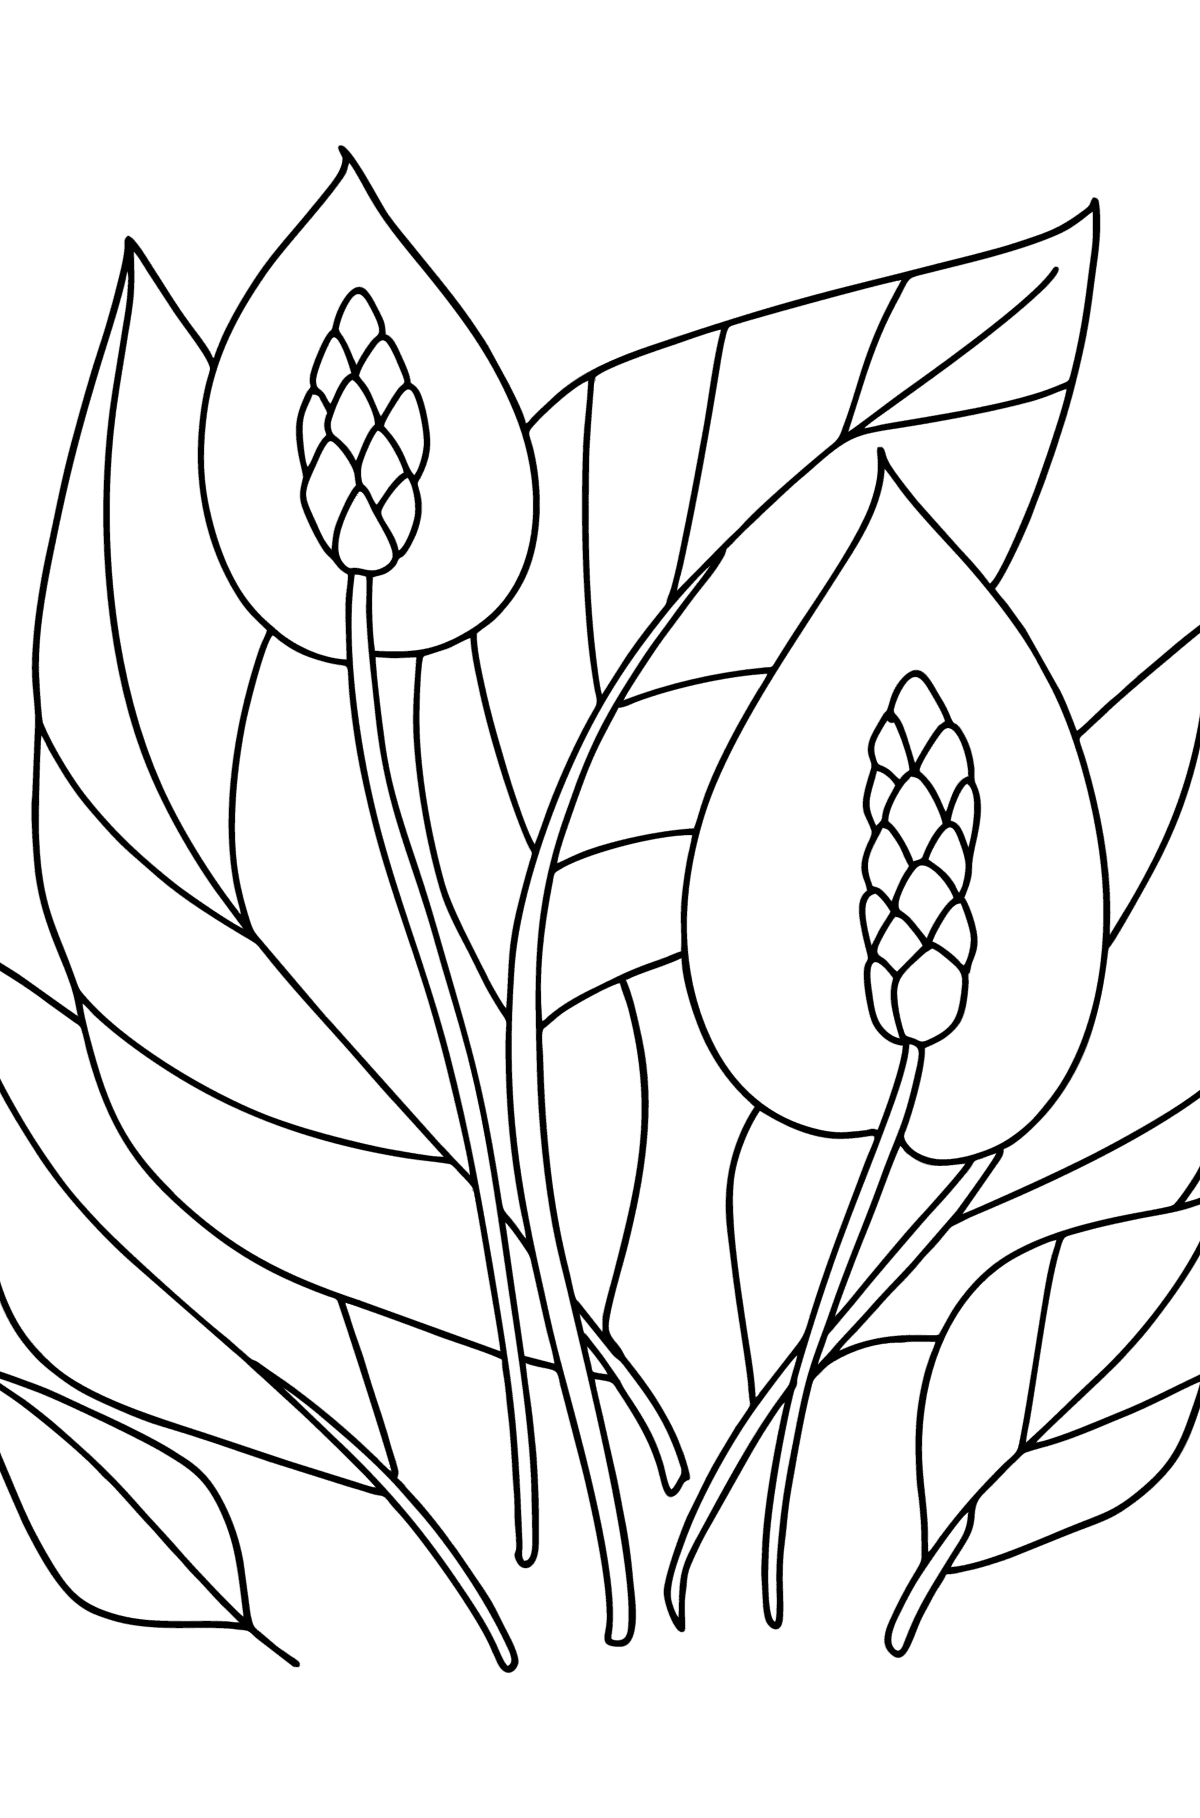 Boyama sayfası Spathiphyllum - Boyamalar çocuklar için